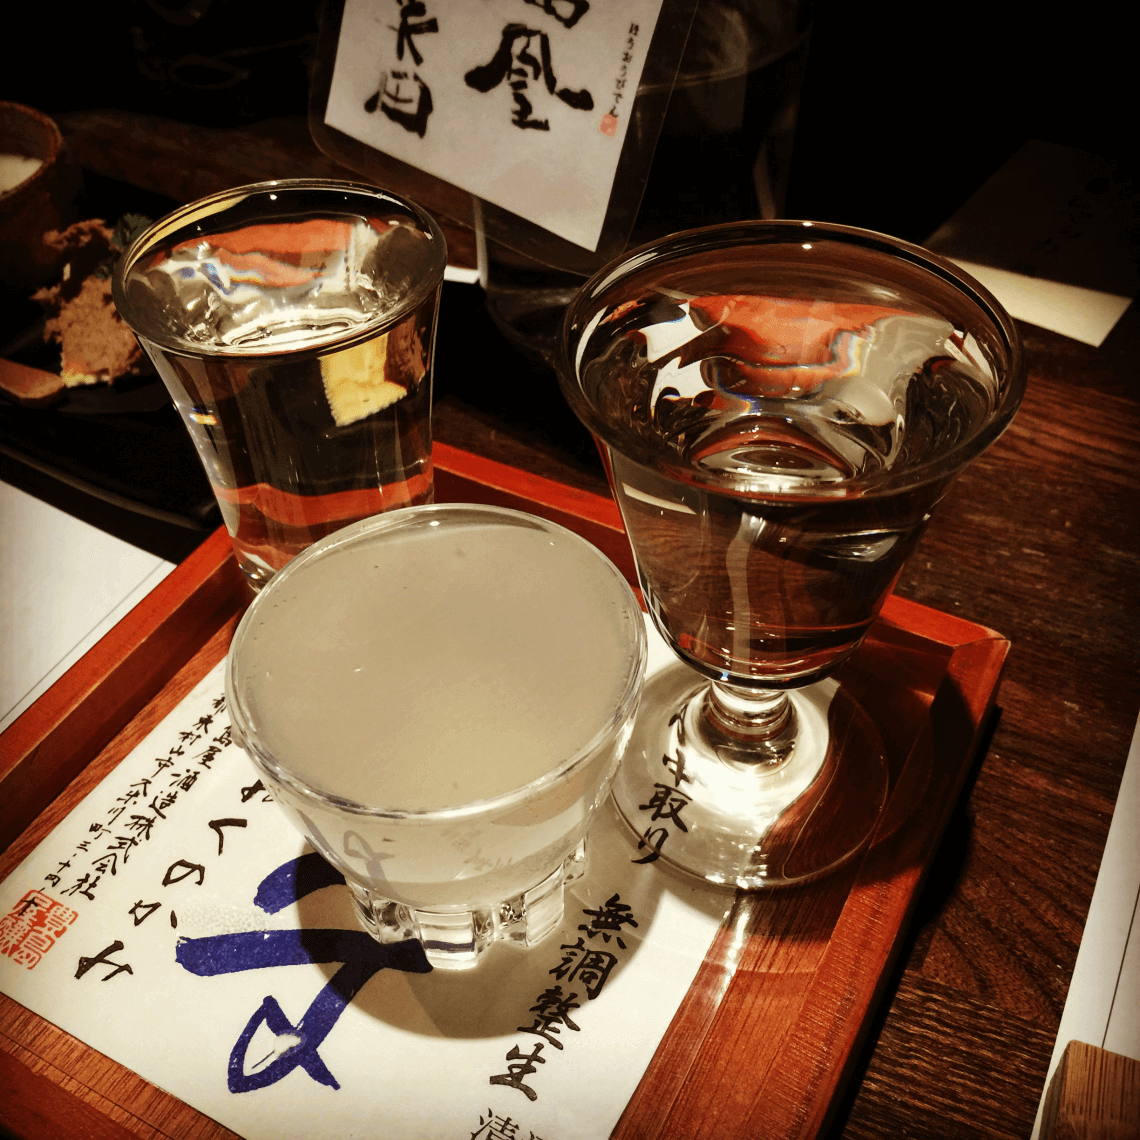 sake tasting izakaya tokyo japan beginners guide to sake